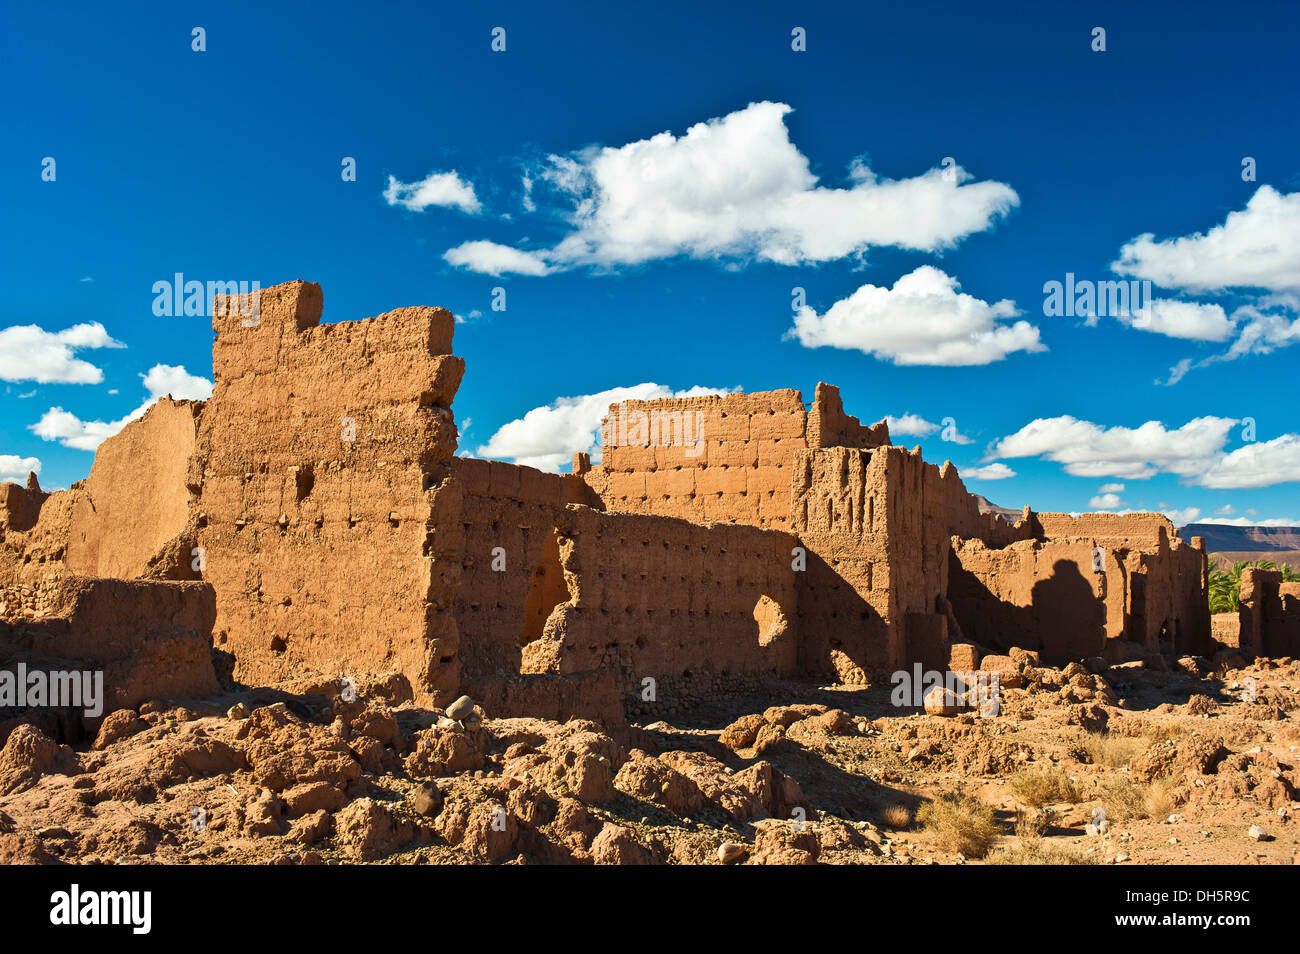 Kasbah à l'abandon, forteresse de brique de boue du peuple Berbère, Tighremt, vallée du Drâa, sud du Maroc, Maroc, Afrique Banque D'Images